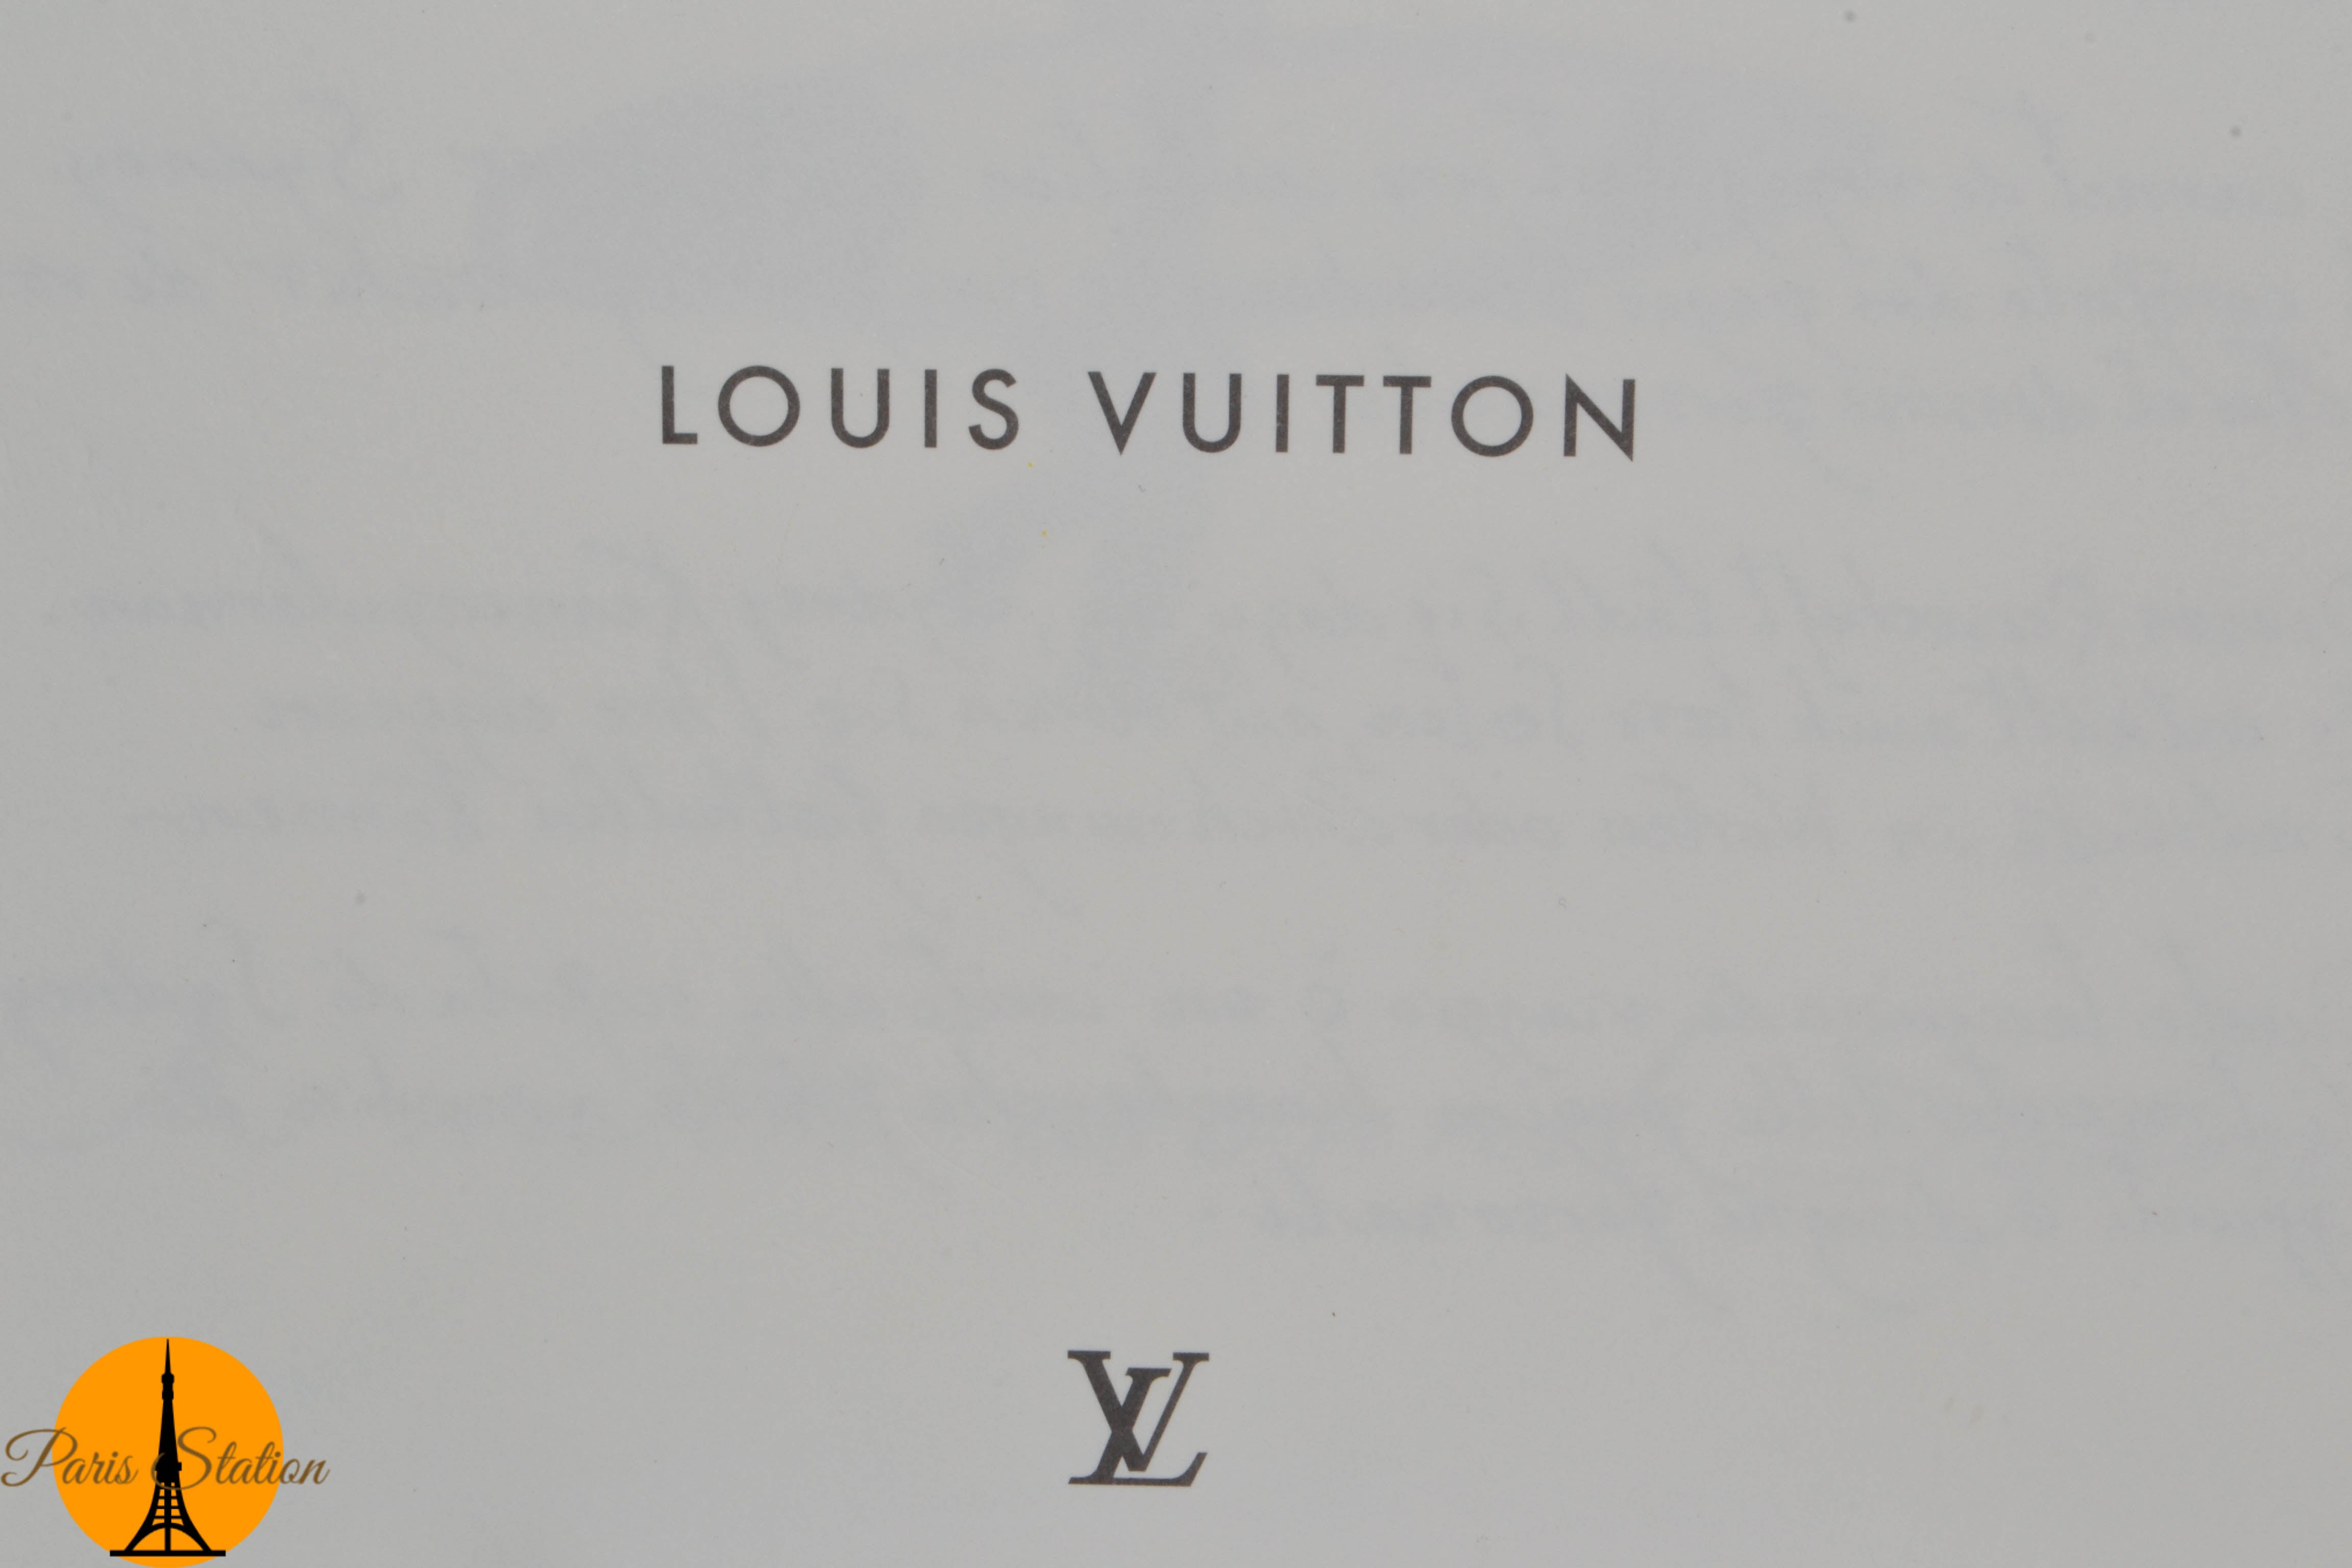 Authentic Louis Vuitton Blue Sydney Australia Travel Book